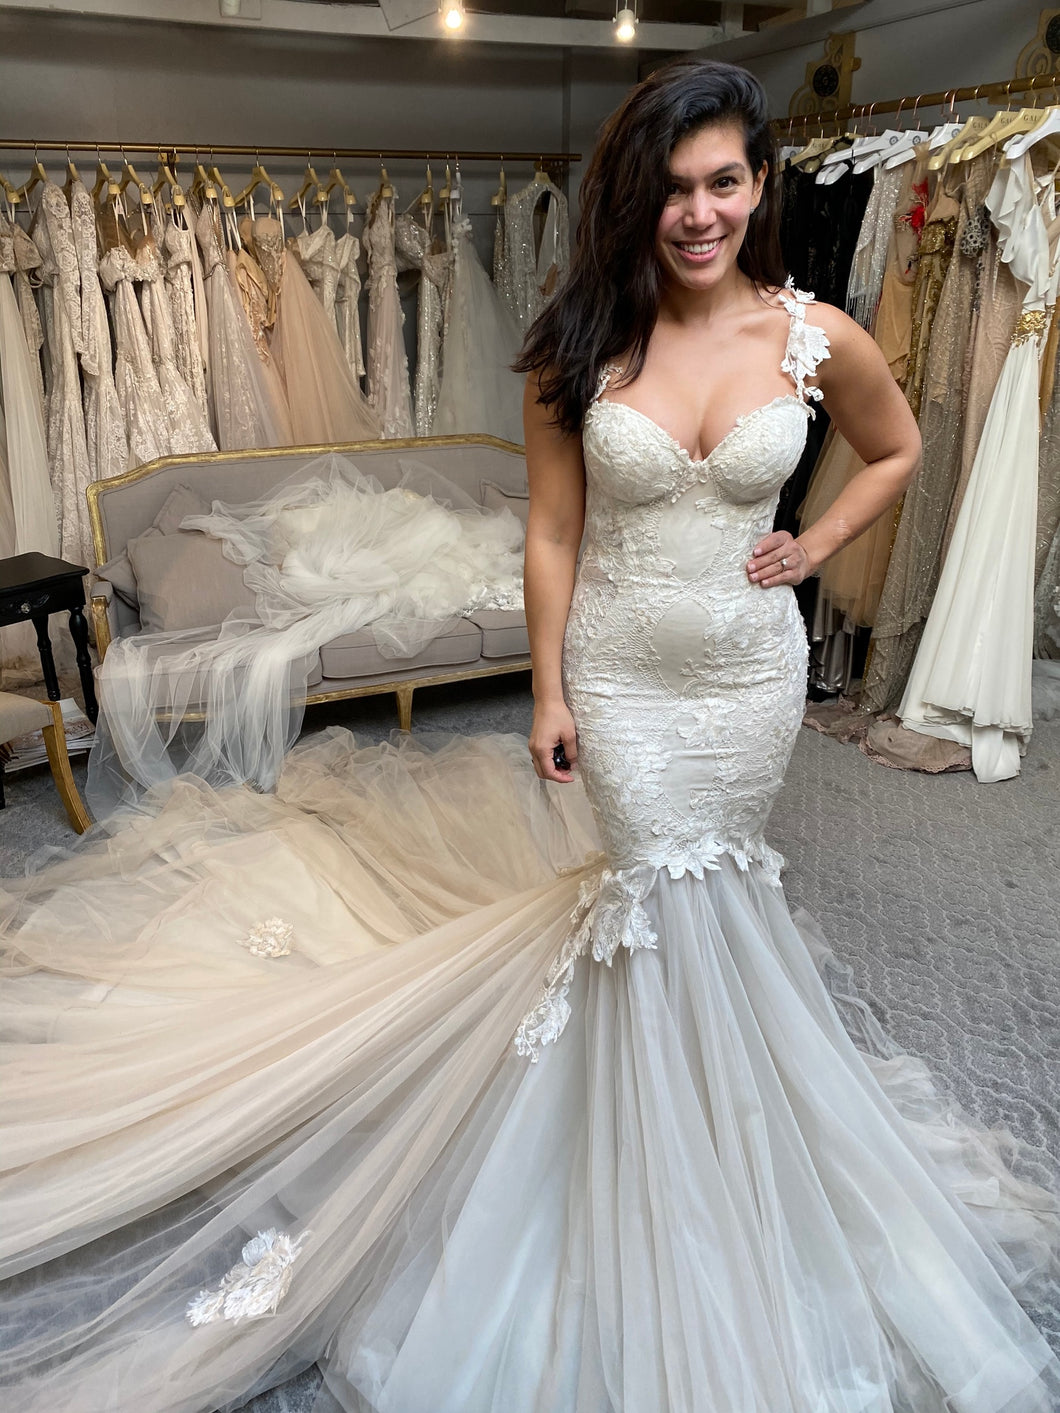 Galia lahav 'Tony' wedding dress size-06 NEW